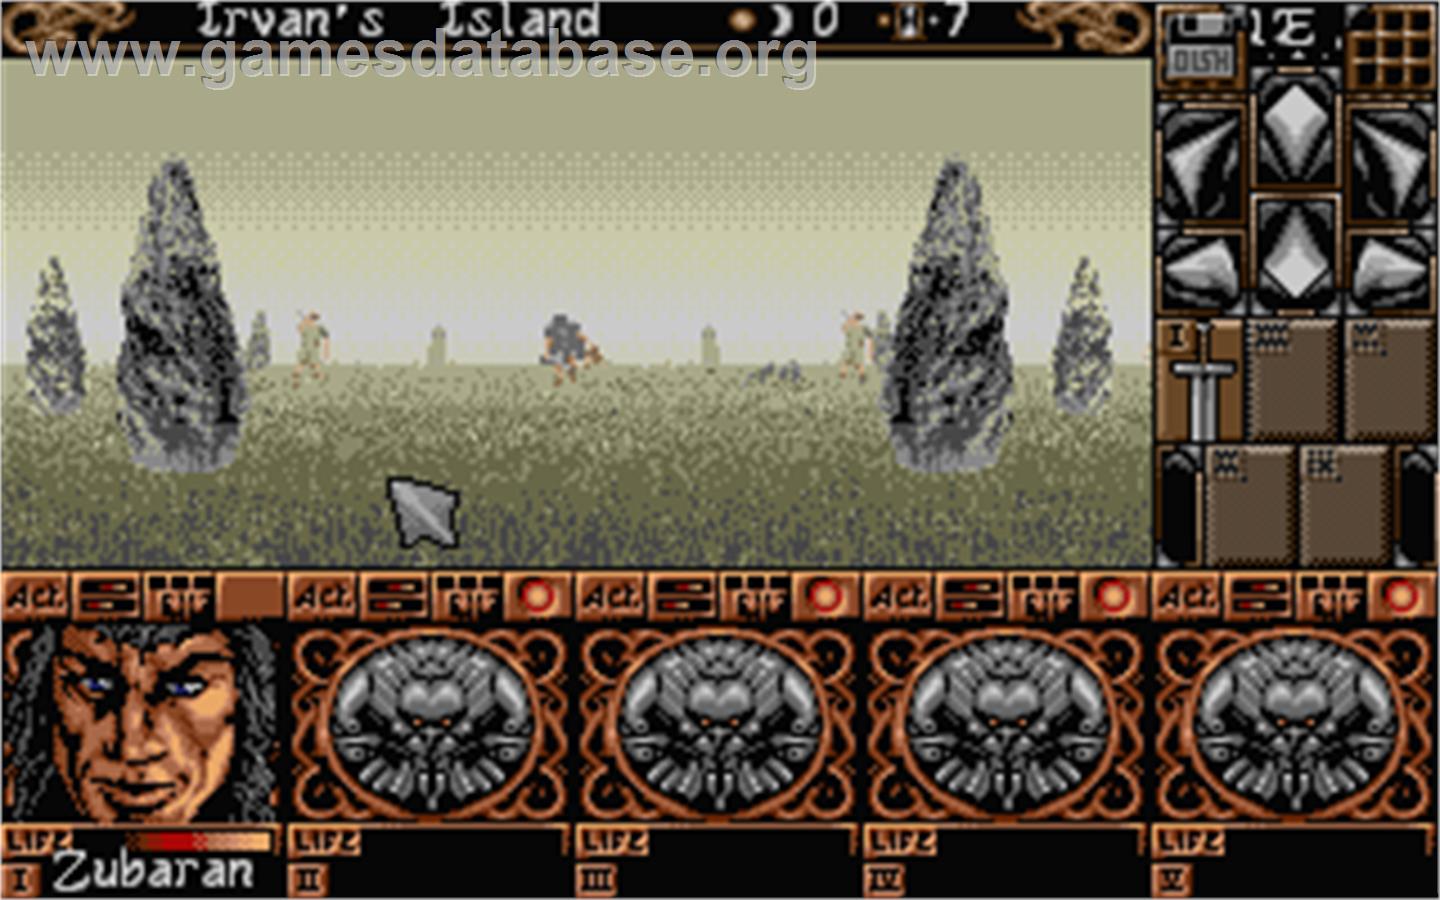 Ishar 2: Messengers of Doom - Atari ST - Artwork - In Game